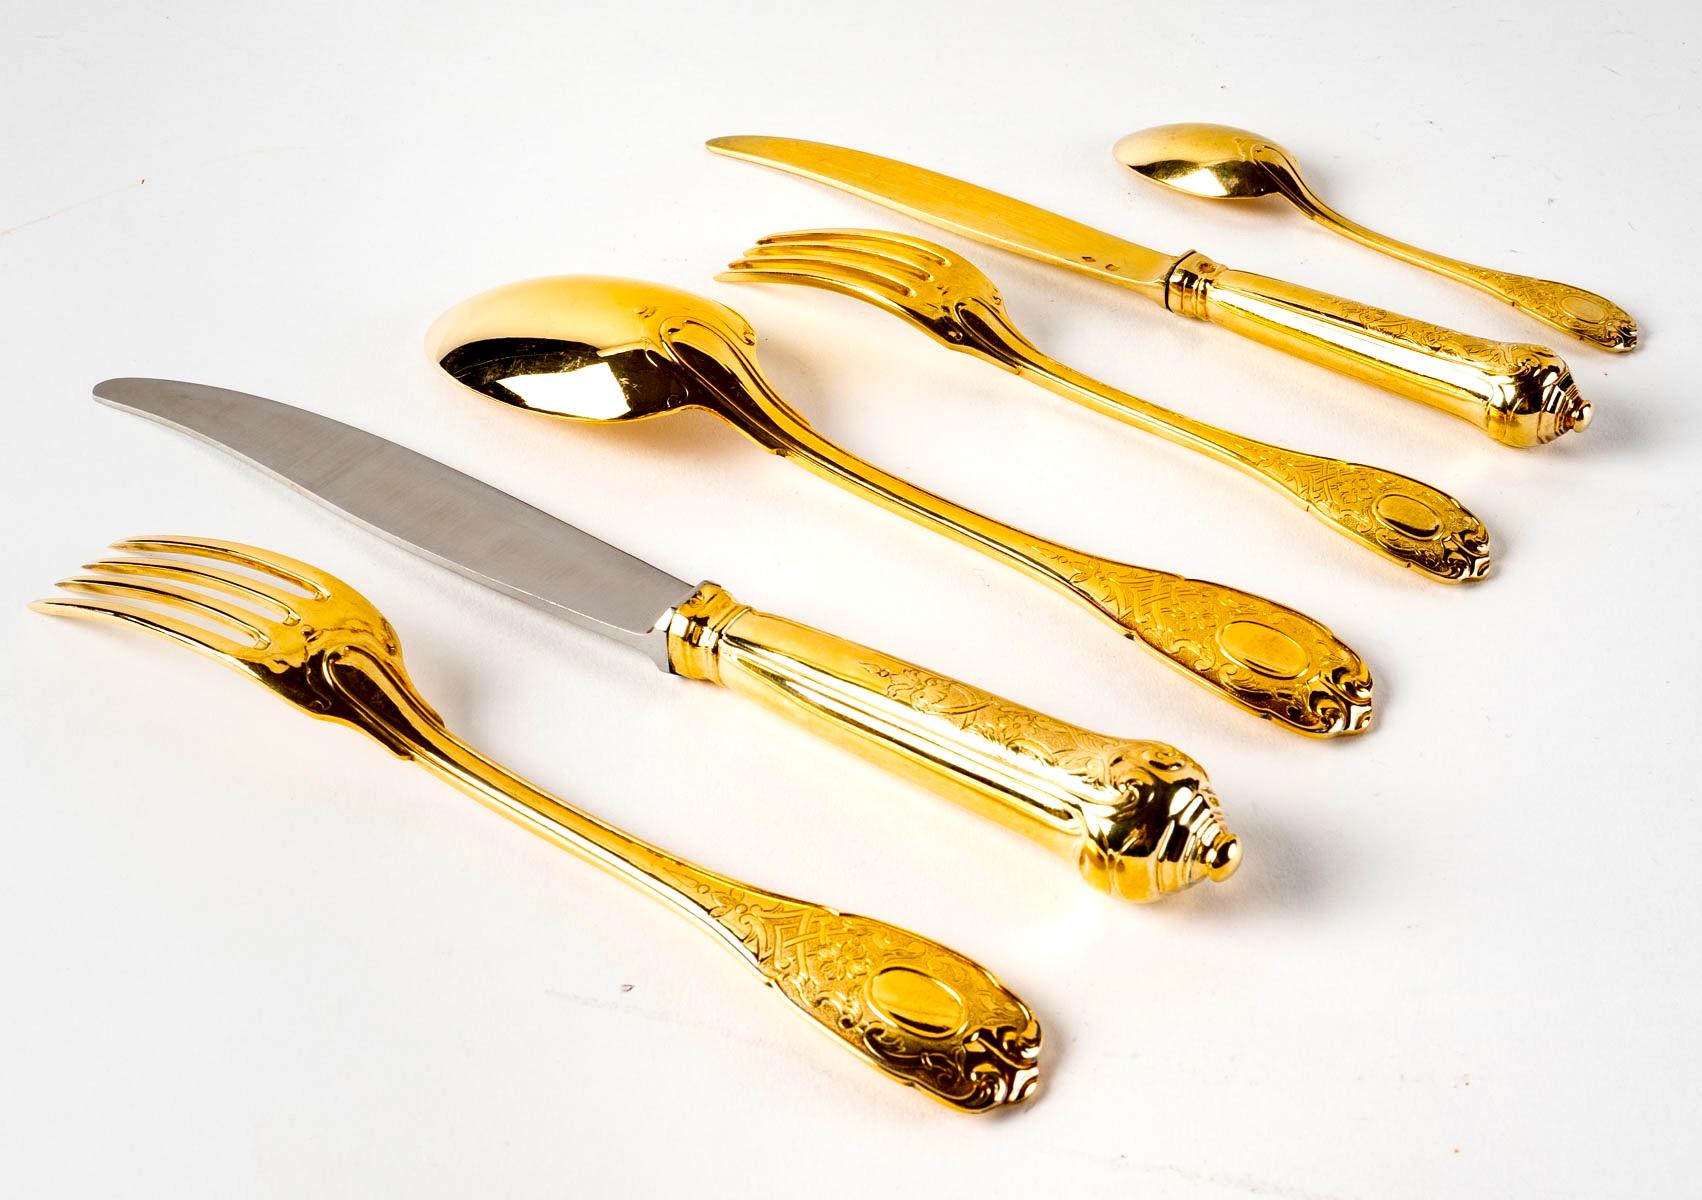 French Puiforcat, Elysée Vermeil Gold Sterling Silver Flatware Cutlery Set, 70 Pieces